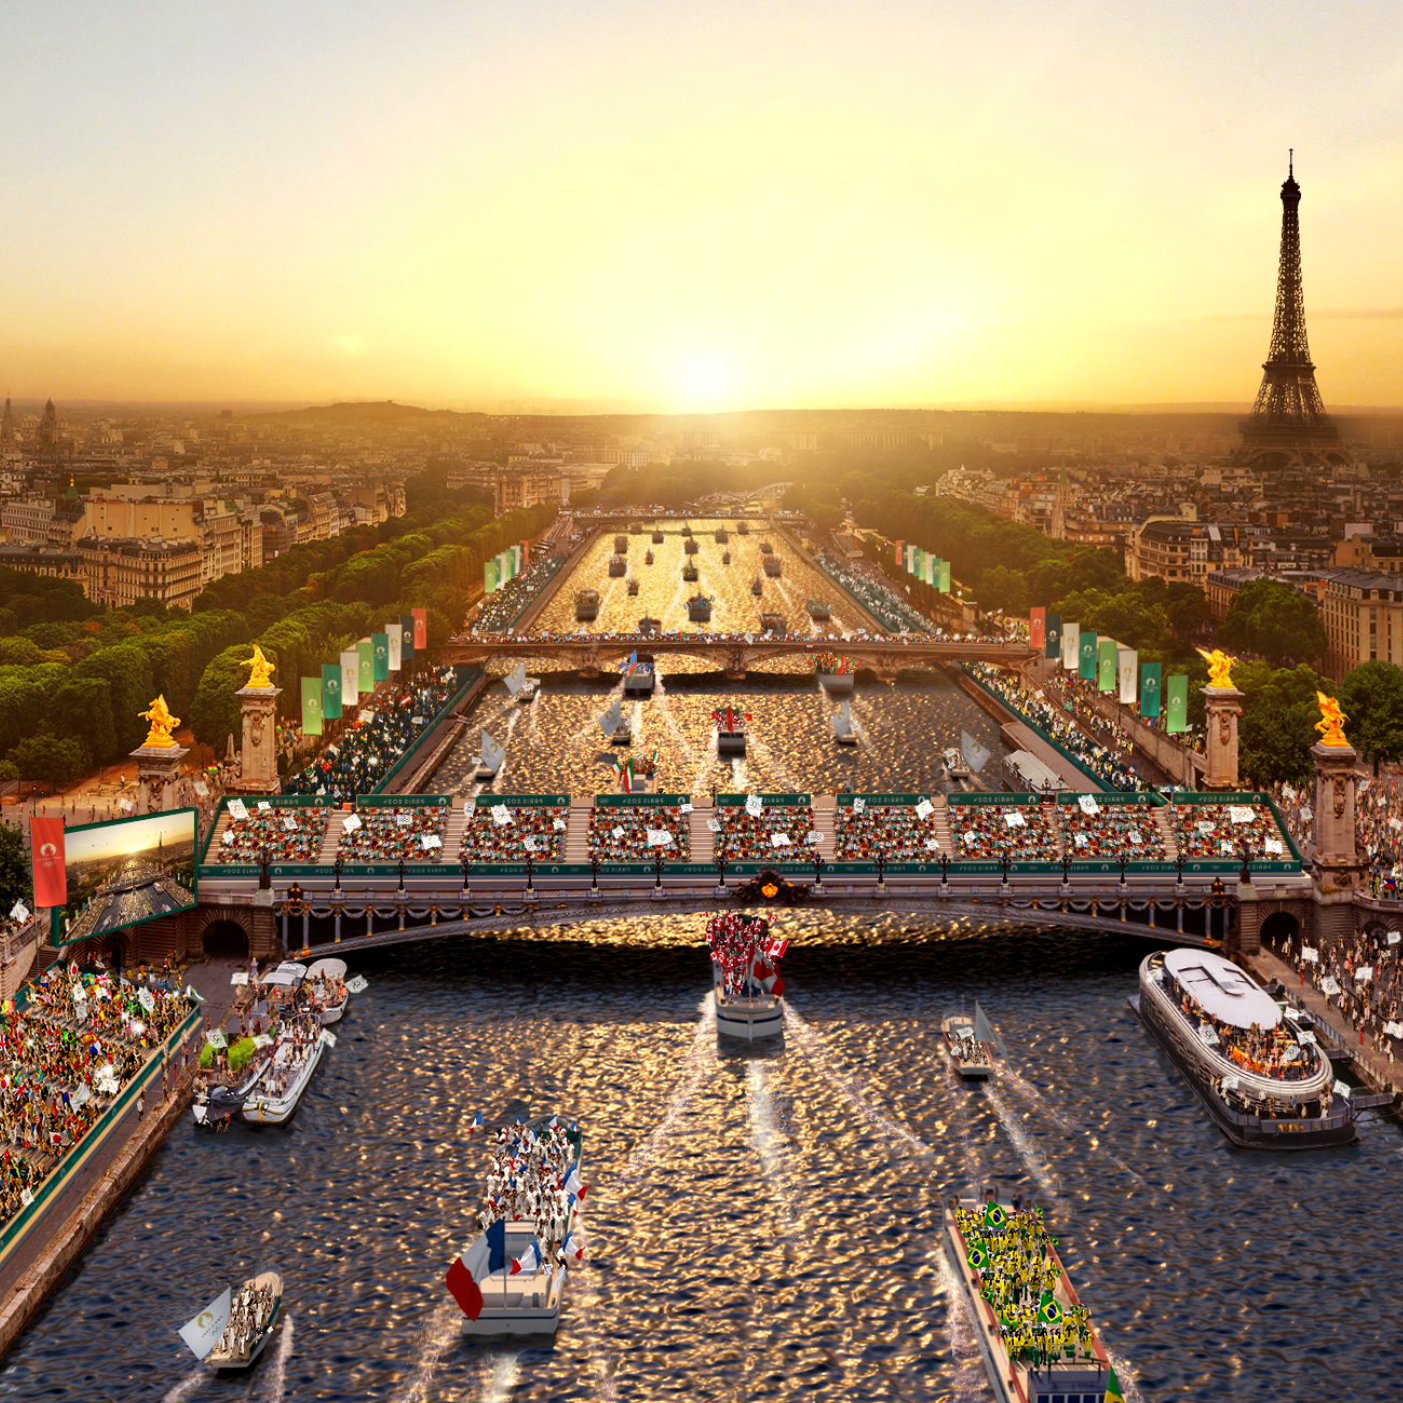 Paris 2024 lance son appel d'offres pour les cérémonies d'ouverture et de clôture des Jeux Olympiques